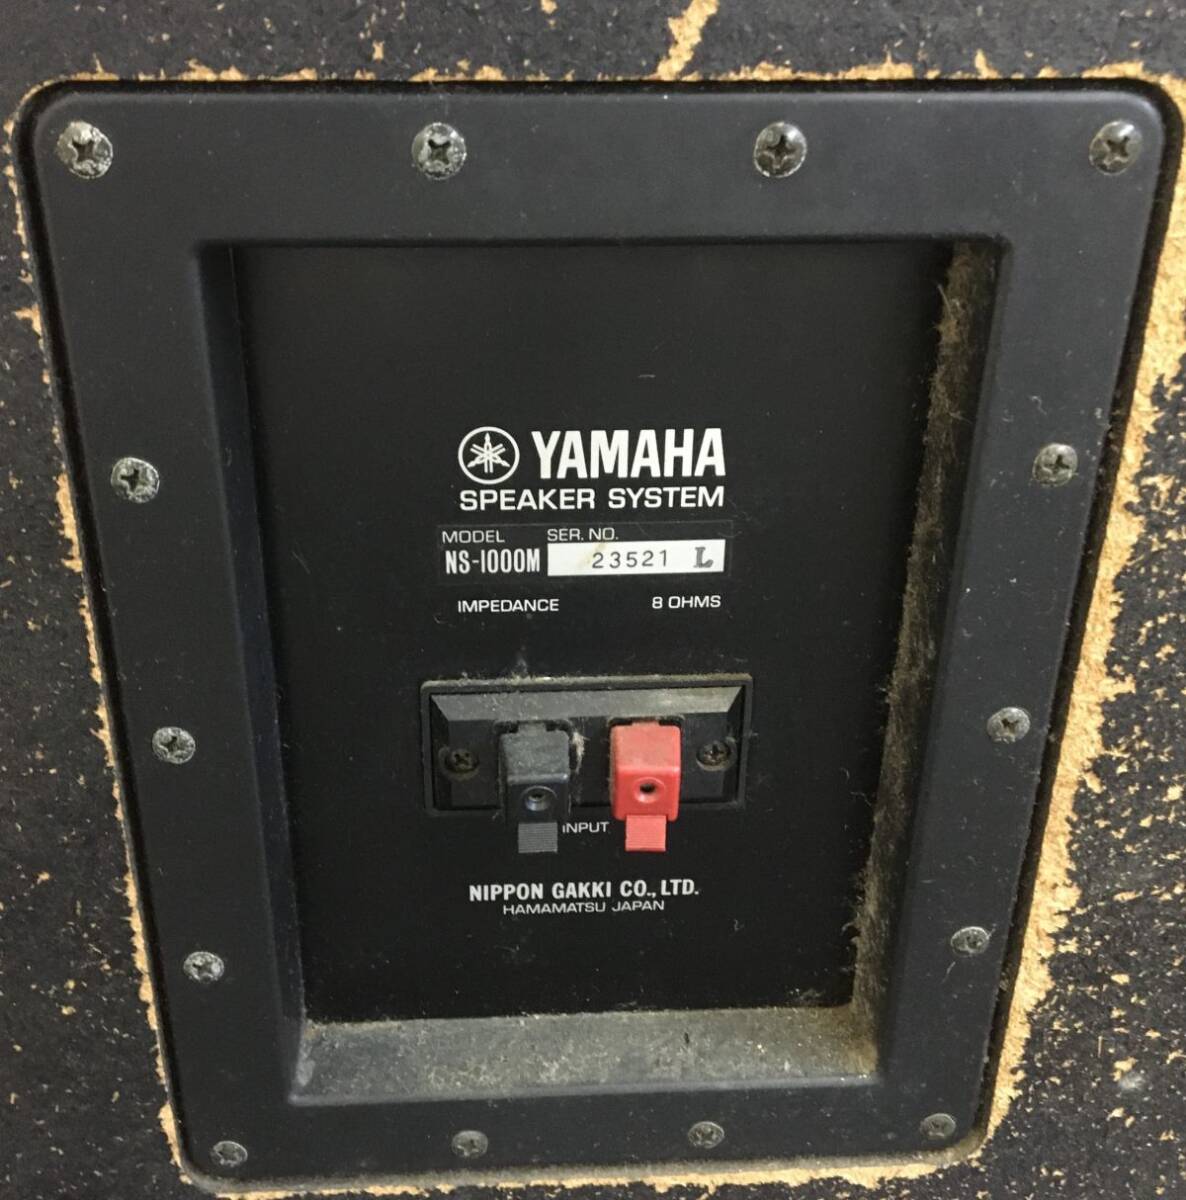 W005-000-000[ самовывоз рекомендация ]YAMAHA Yamaha динамик NS-1000M пара акустическое оборудование звуковая аппаратура акустическая система 